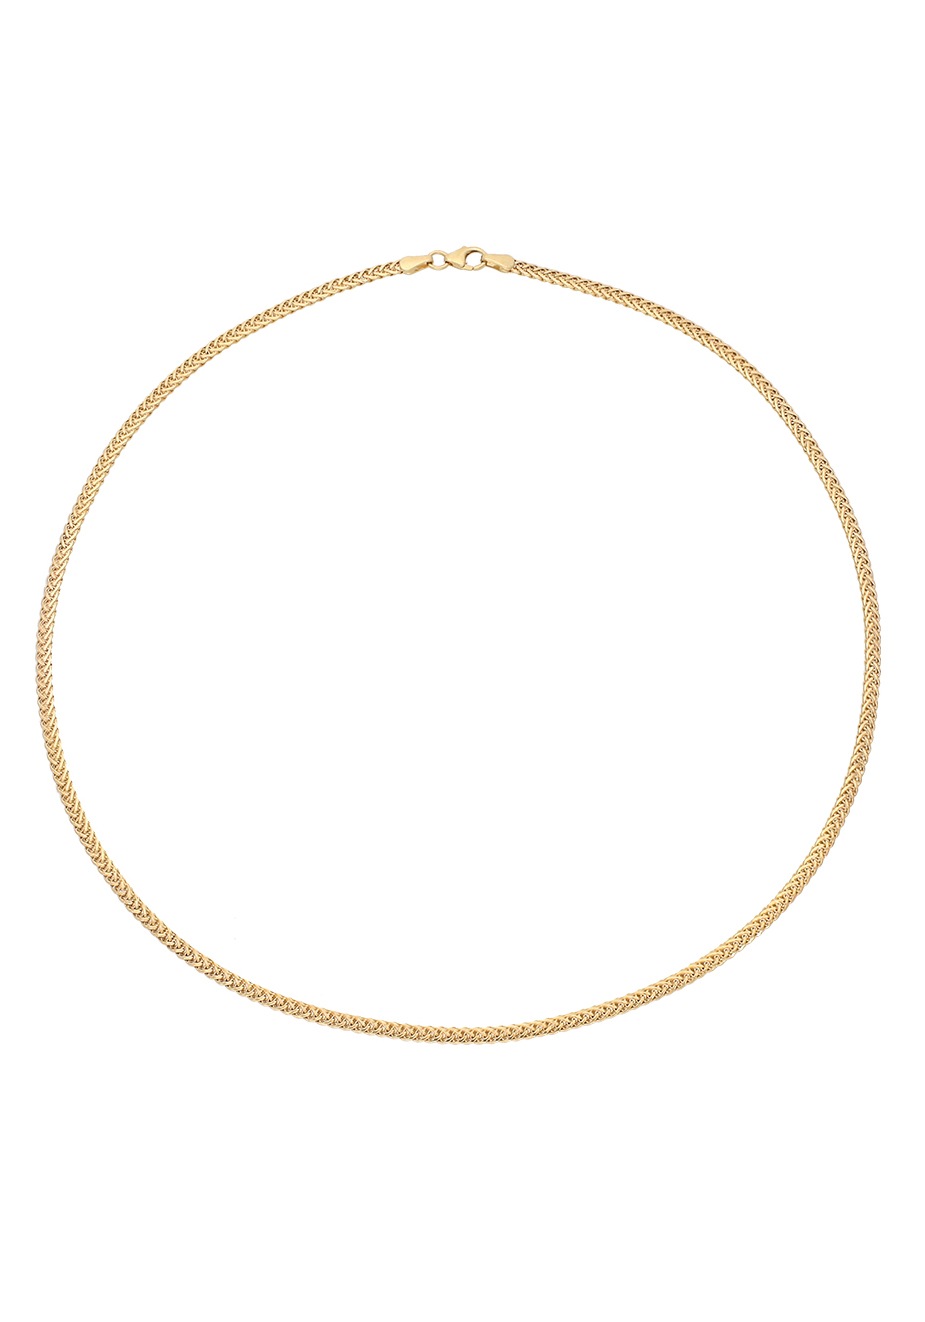 2,8 »Schmuck Zopfkettengliederung, Firetti kaufen online mm, Goldkette glänzend« in Geschenk, zeitlos